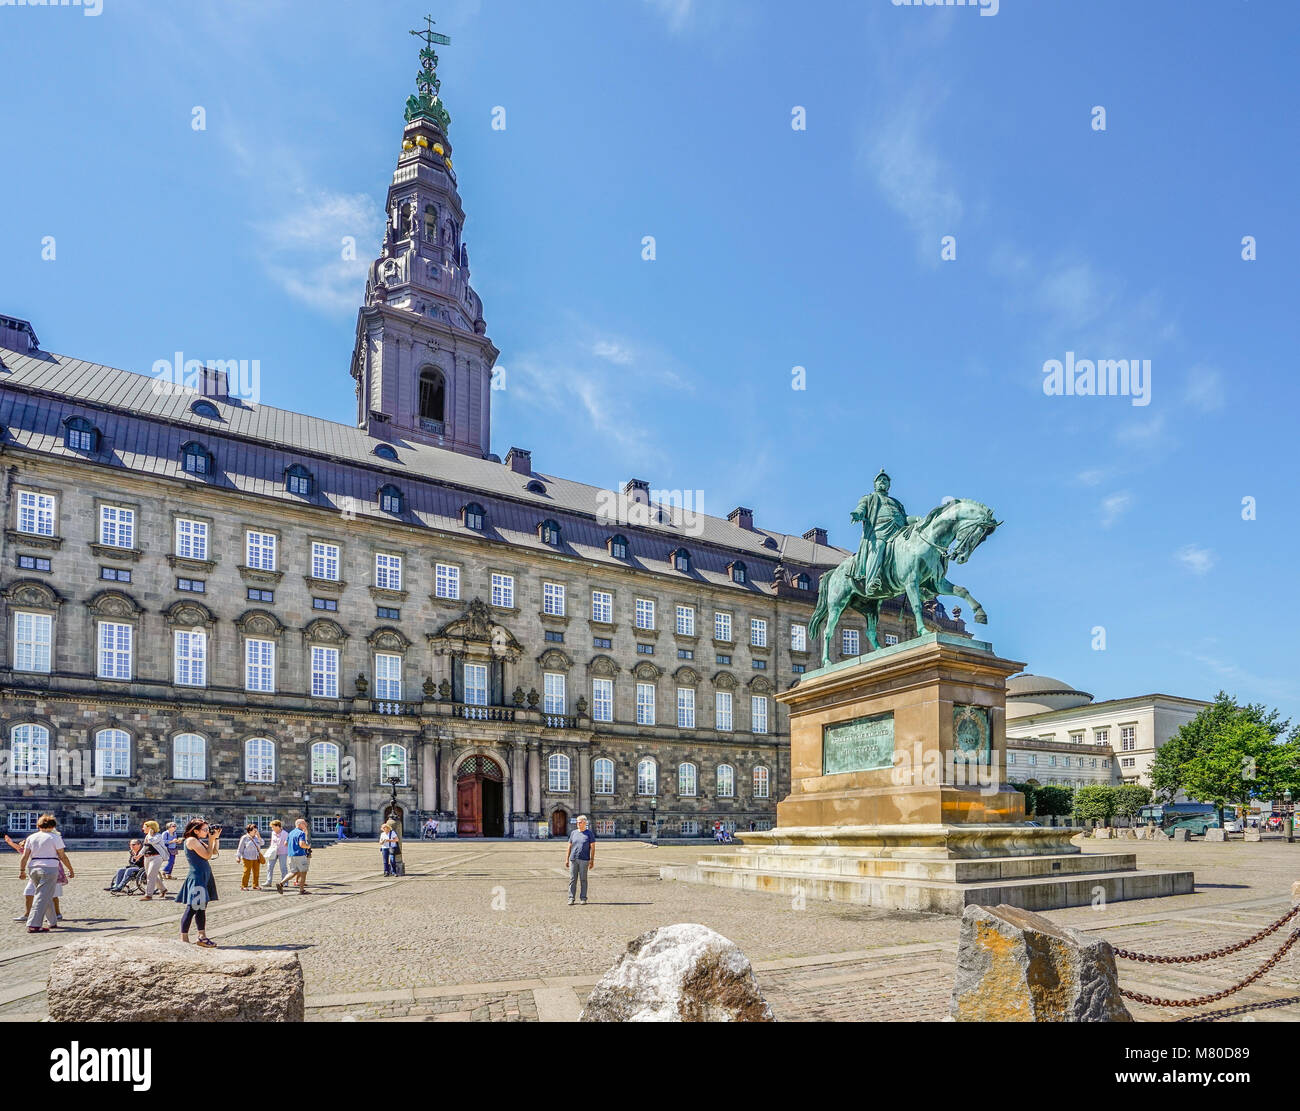 Le Danemark, la Nouvelle-Zélande, Copenhague, statue équestre de Frédéric VII à Christianborg Palace, siège de la Folketinget, le Parlement danois Banque D'Images